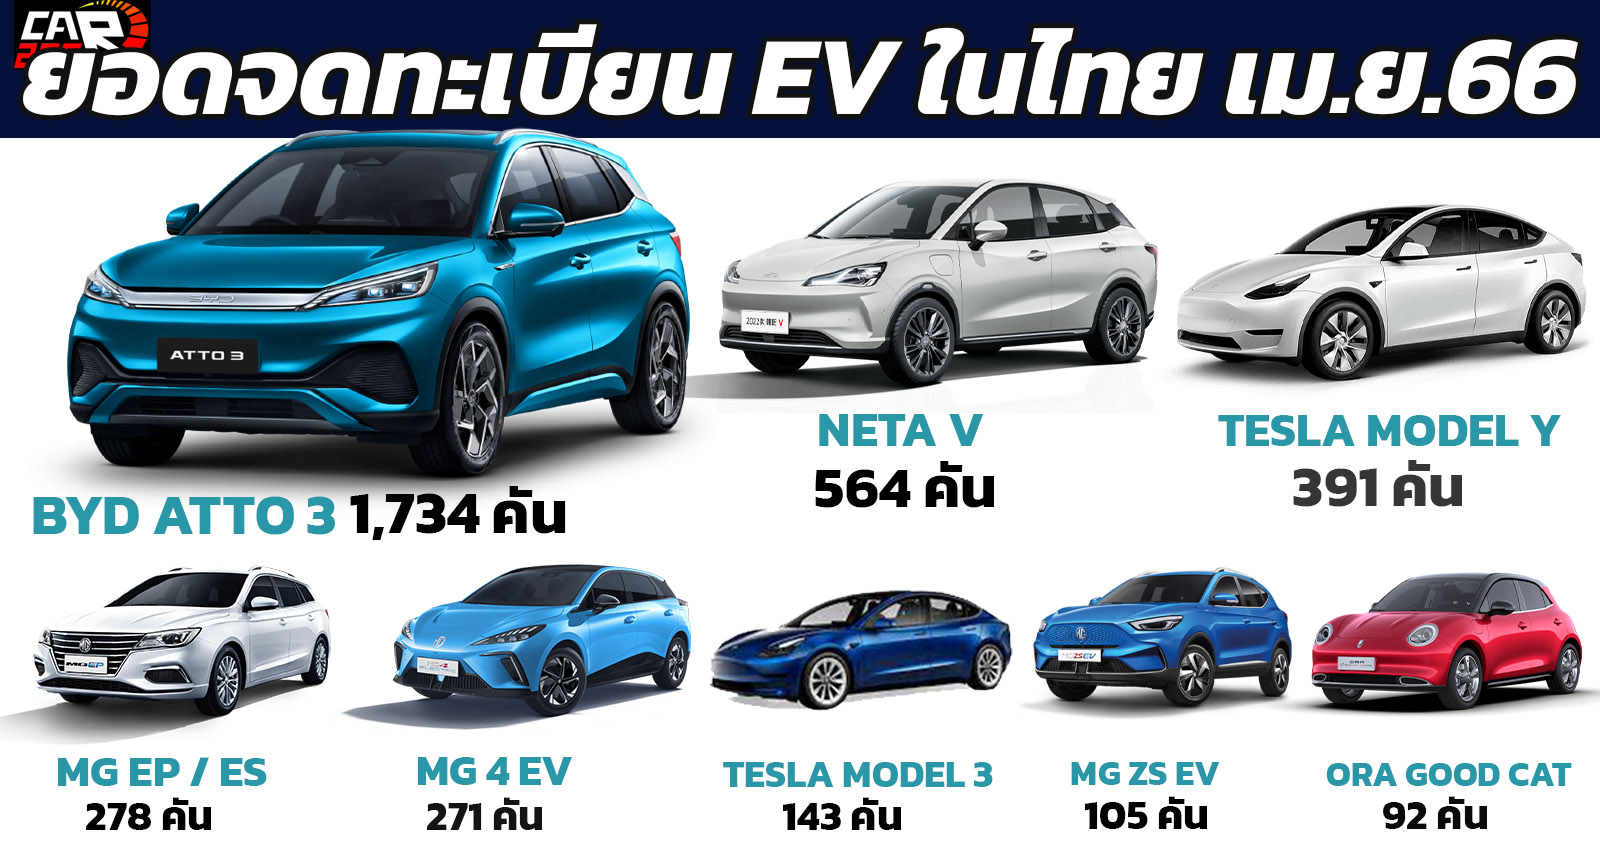 ยอดจดทะเบียนรถยนต์ไฟฟ้าเมษยน 2566 ในไทย กว่า 3,822 คัน